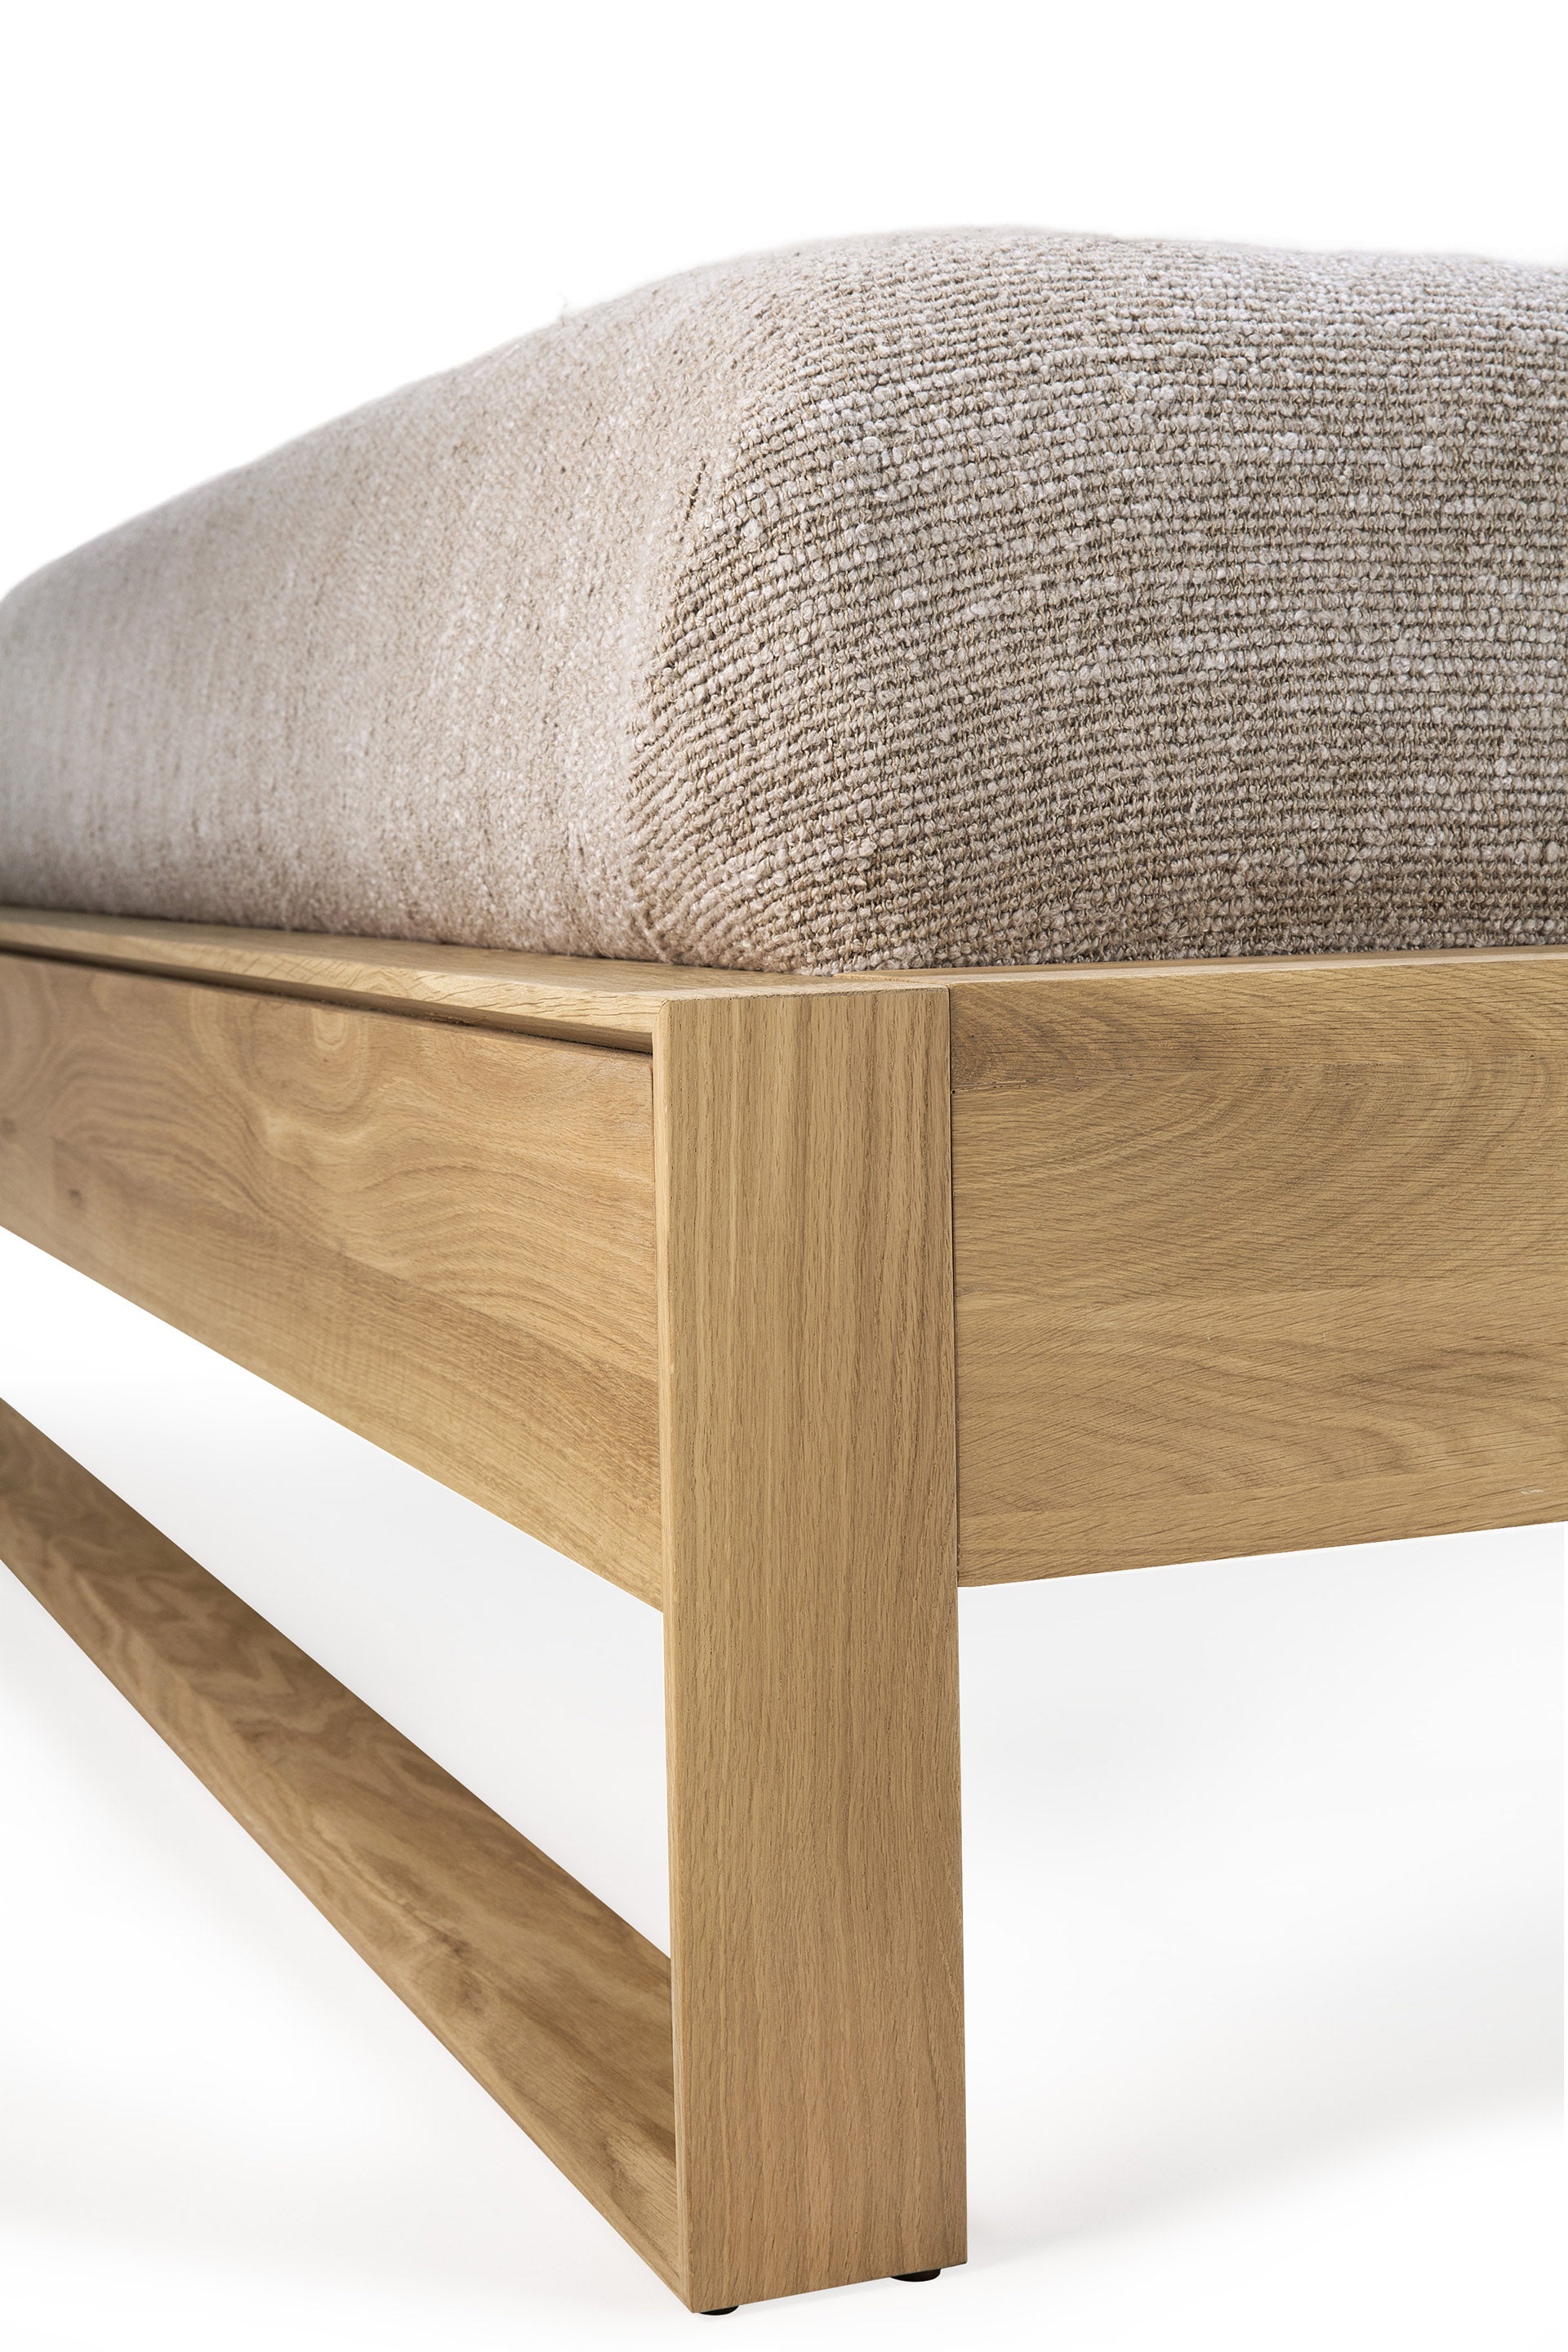 比利時原裝進口實木傢俬 - 臥室系列 - Nordic II系列橡木床